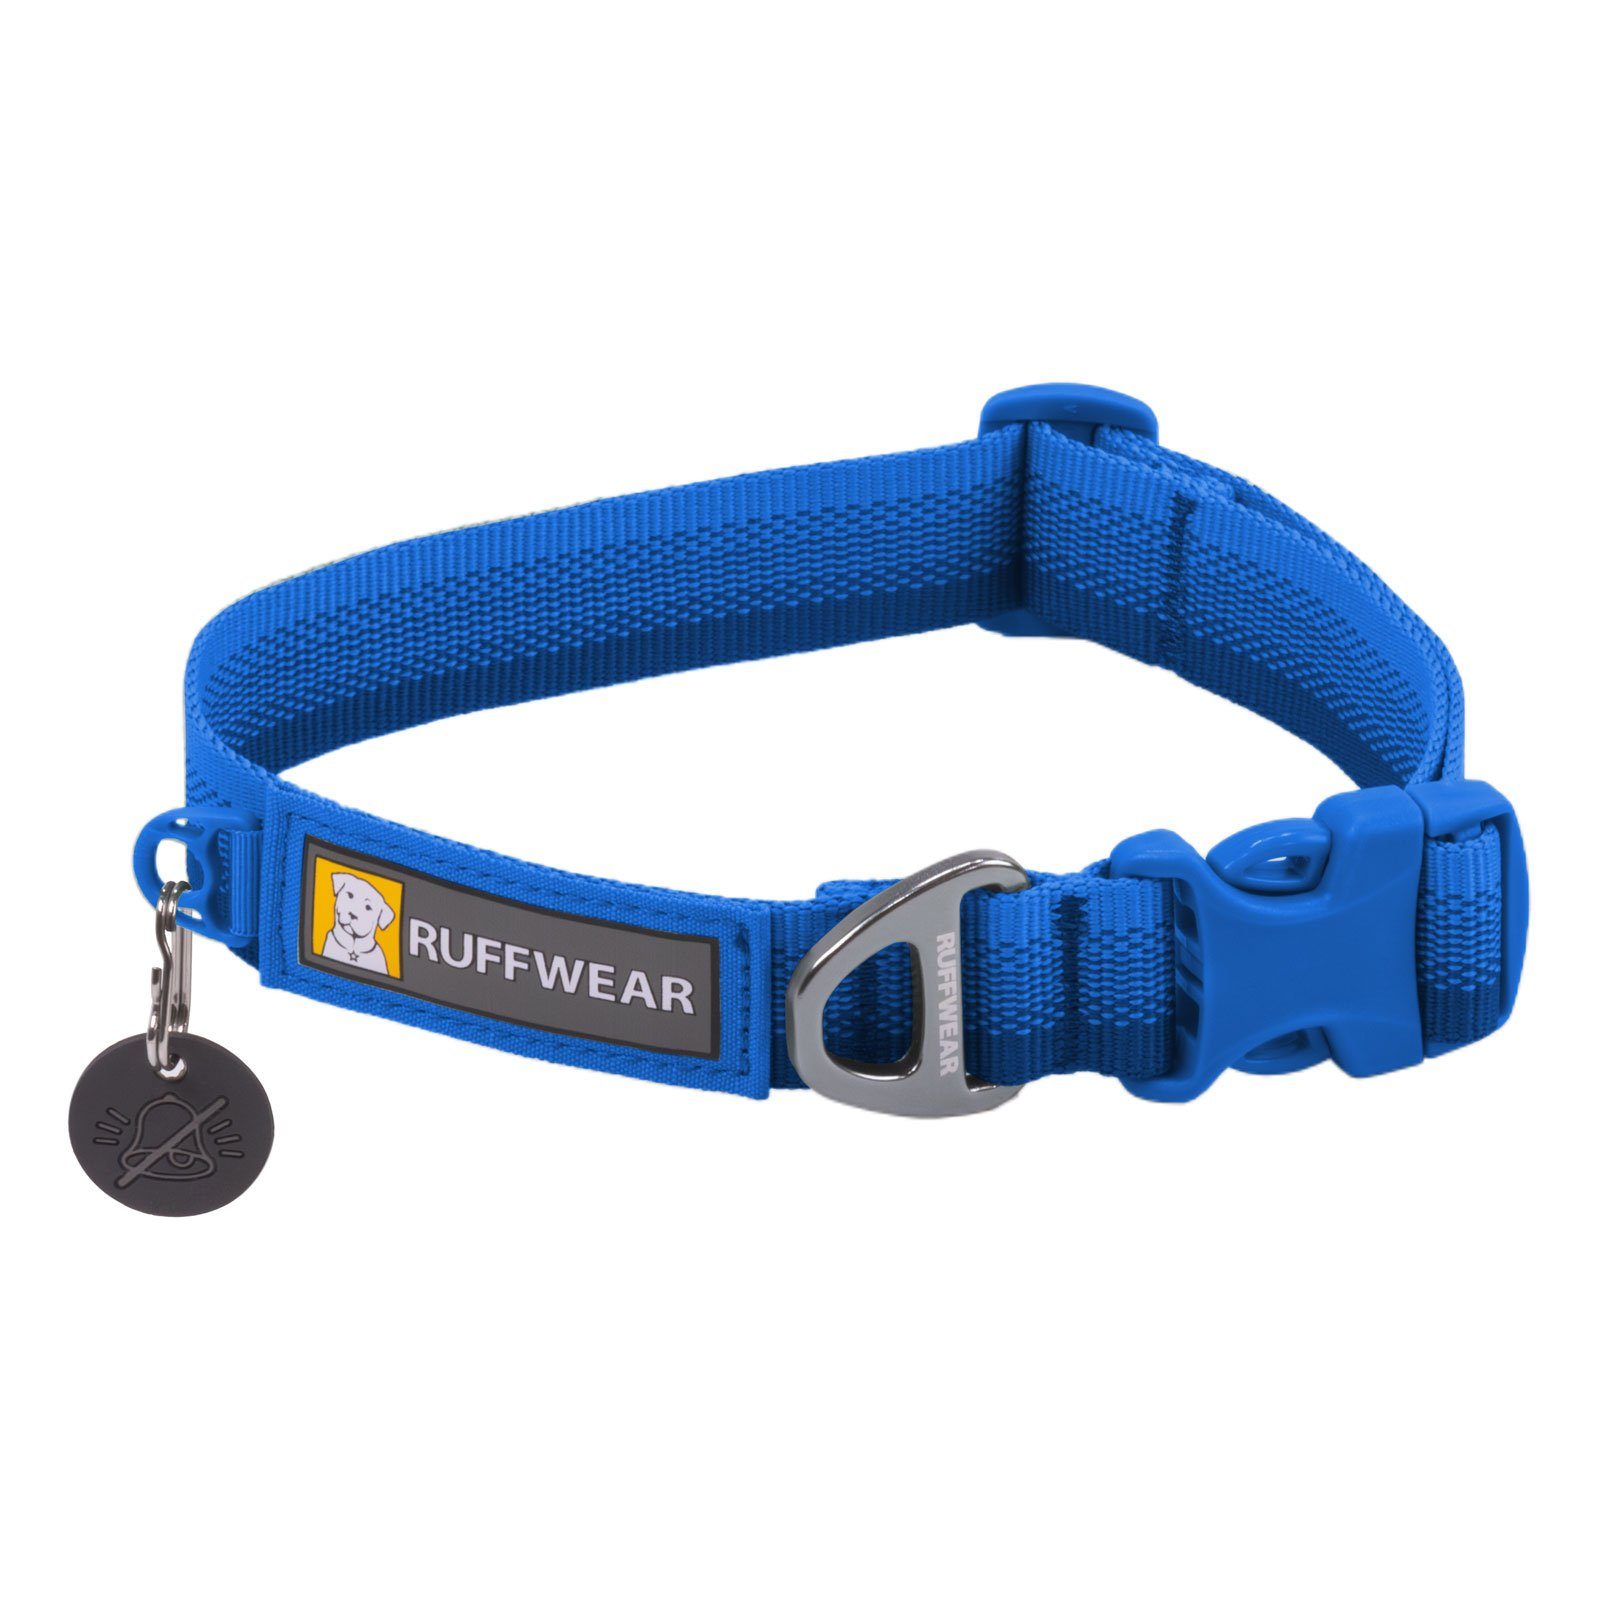 Ruffwear Hunde-Halsband FRONT RANGE™ Collar Blue Pool, 100% Polyester Tubelok™ Schlauchband (16% recycled), Halsband für alltägliche Abenteuer.